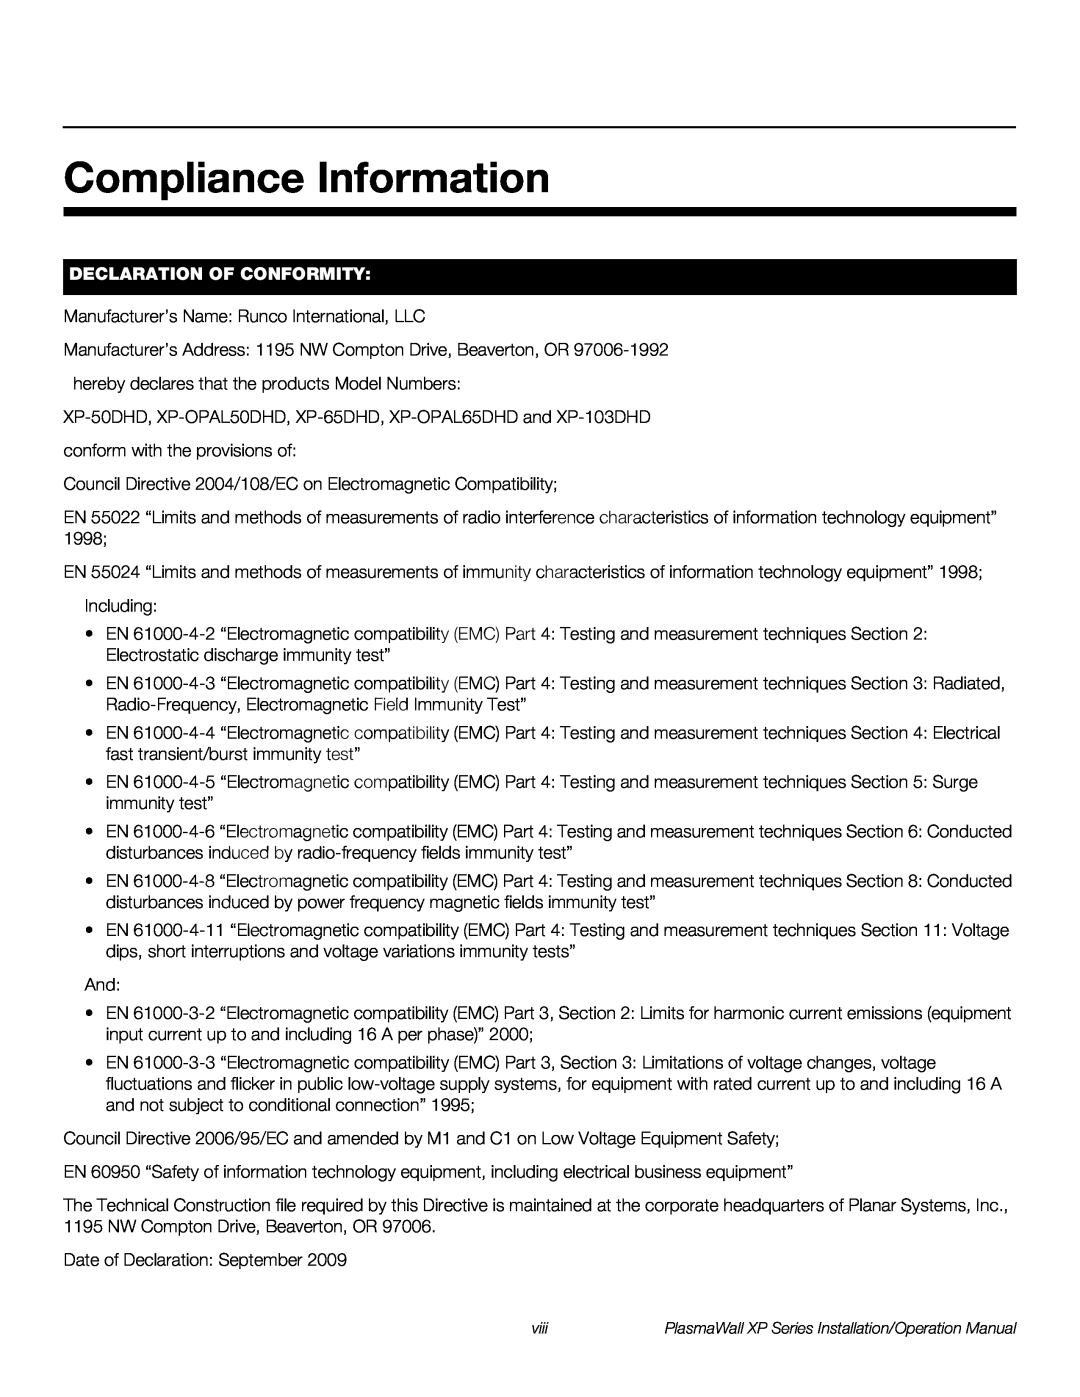 Runco XP-50DHD, XP-103DHD, XP-OPAL65DHD, XP-OPAL50DHD operation manual Compliance Information, Declaration Of Conformity 